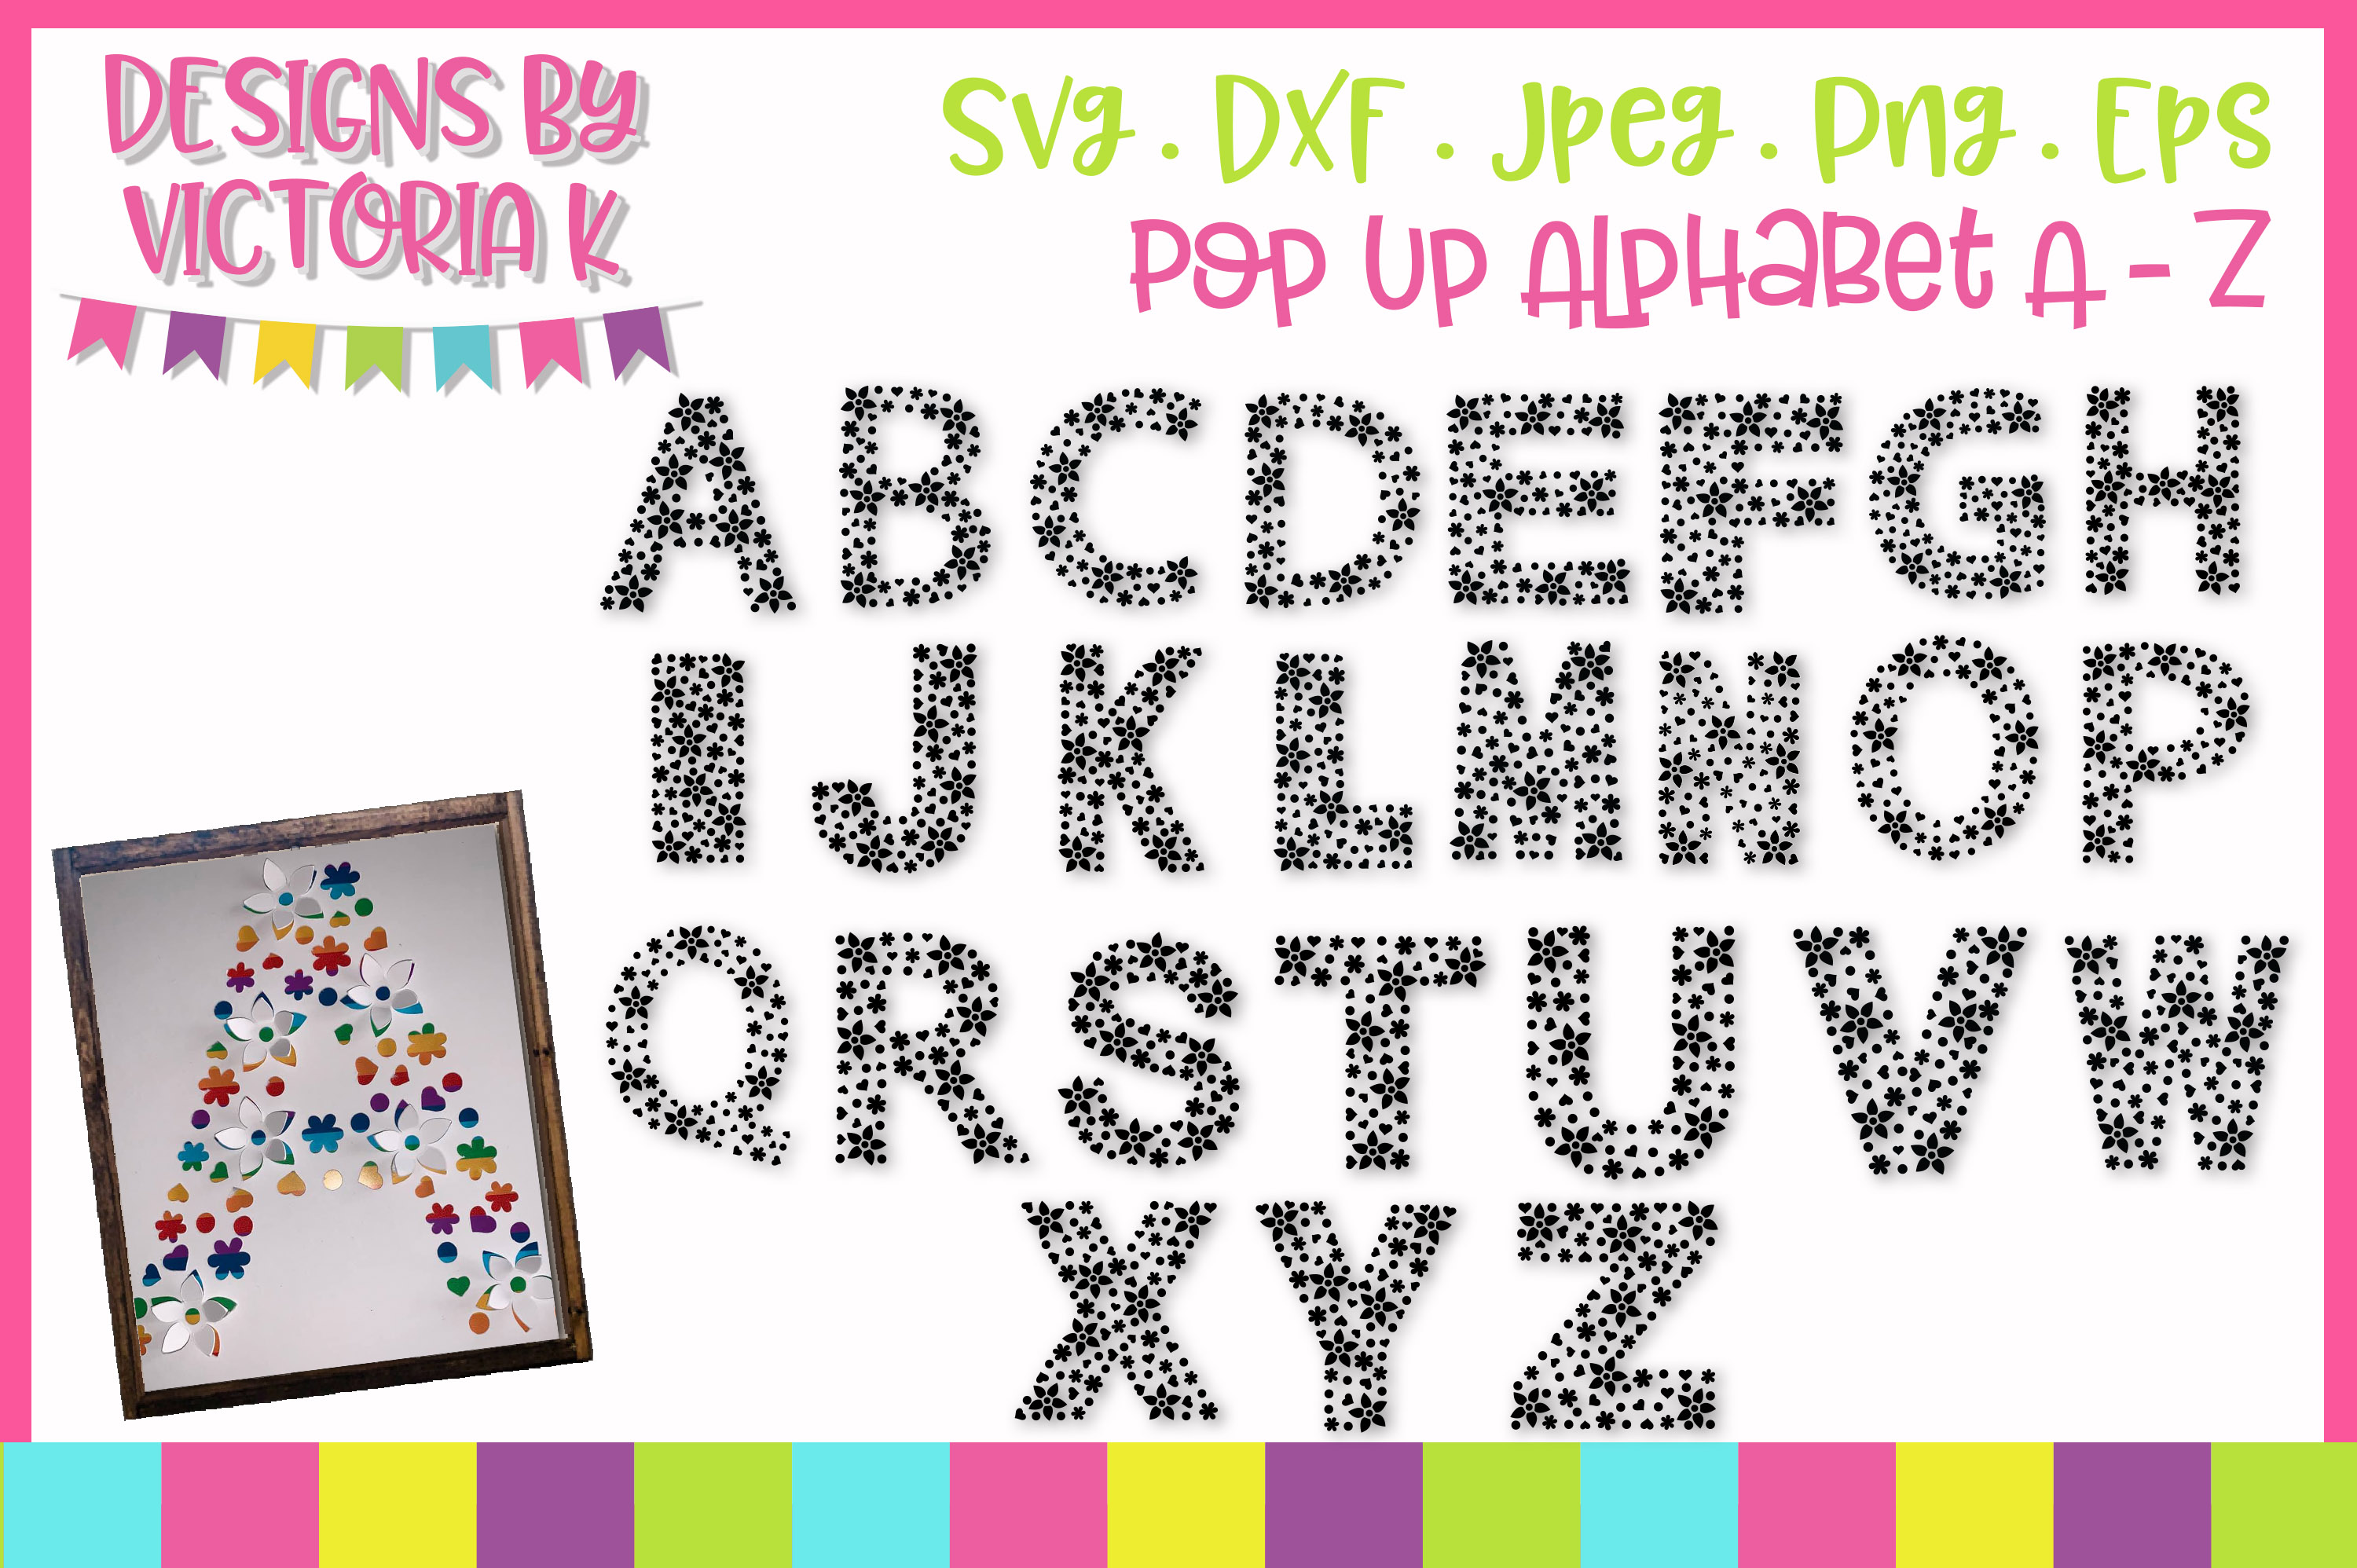 Pop up Alphabet A-Z, SVG Cut File